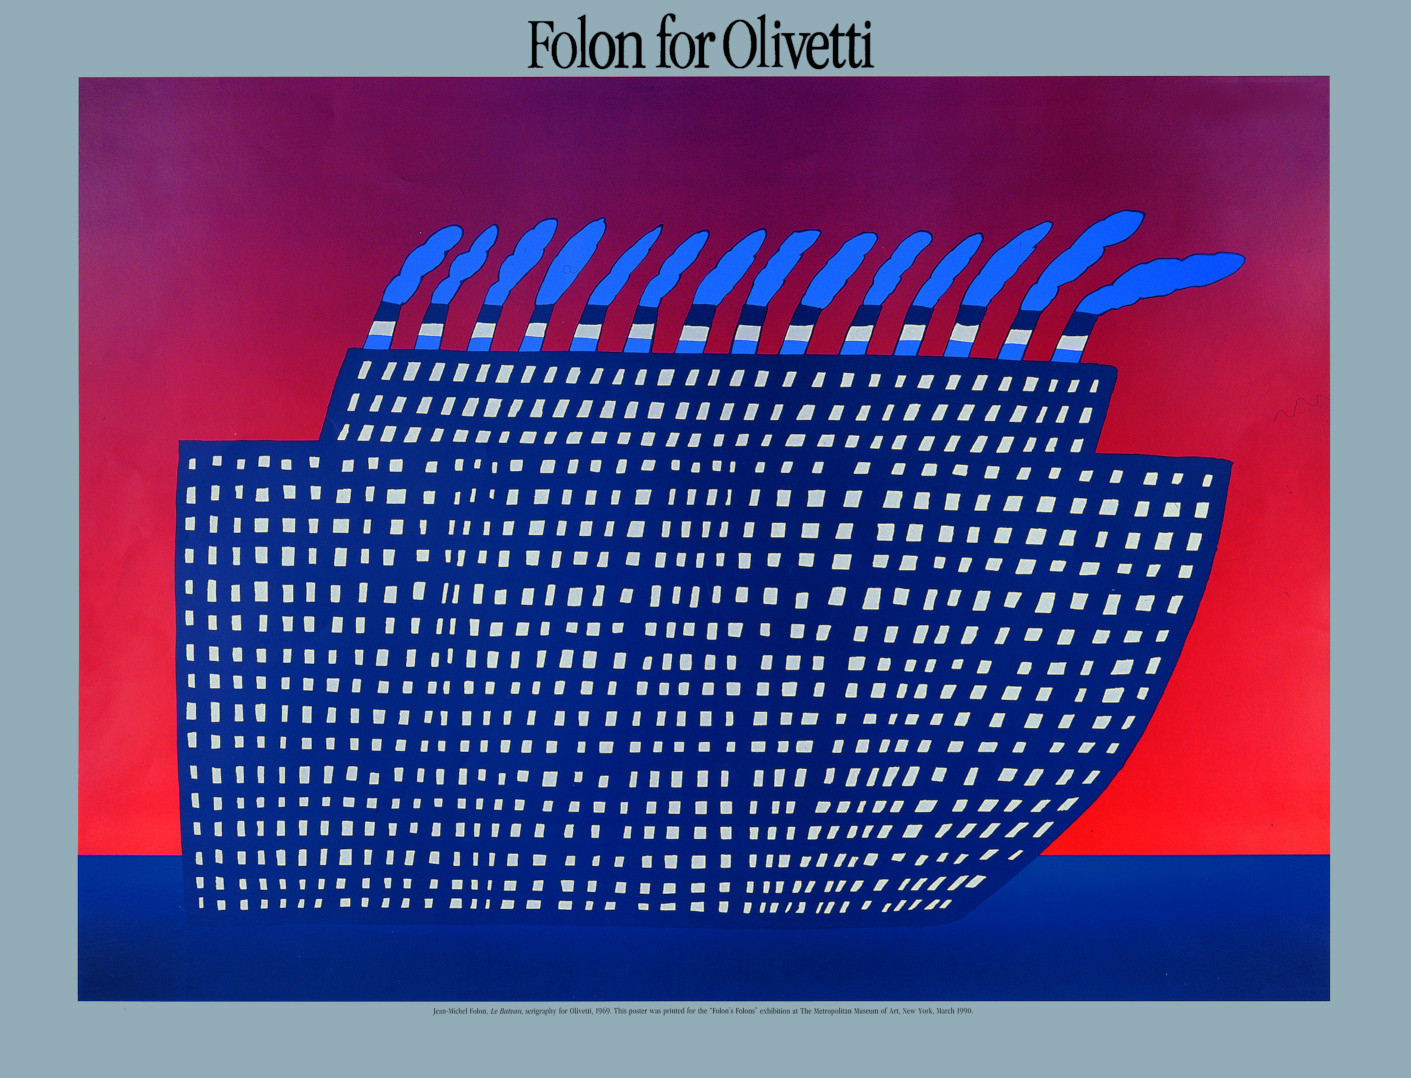 Folon for Olivetti